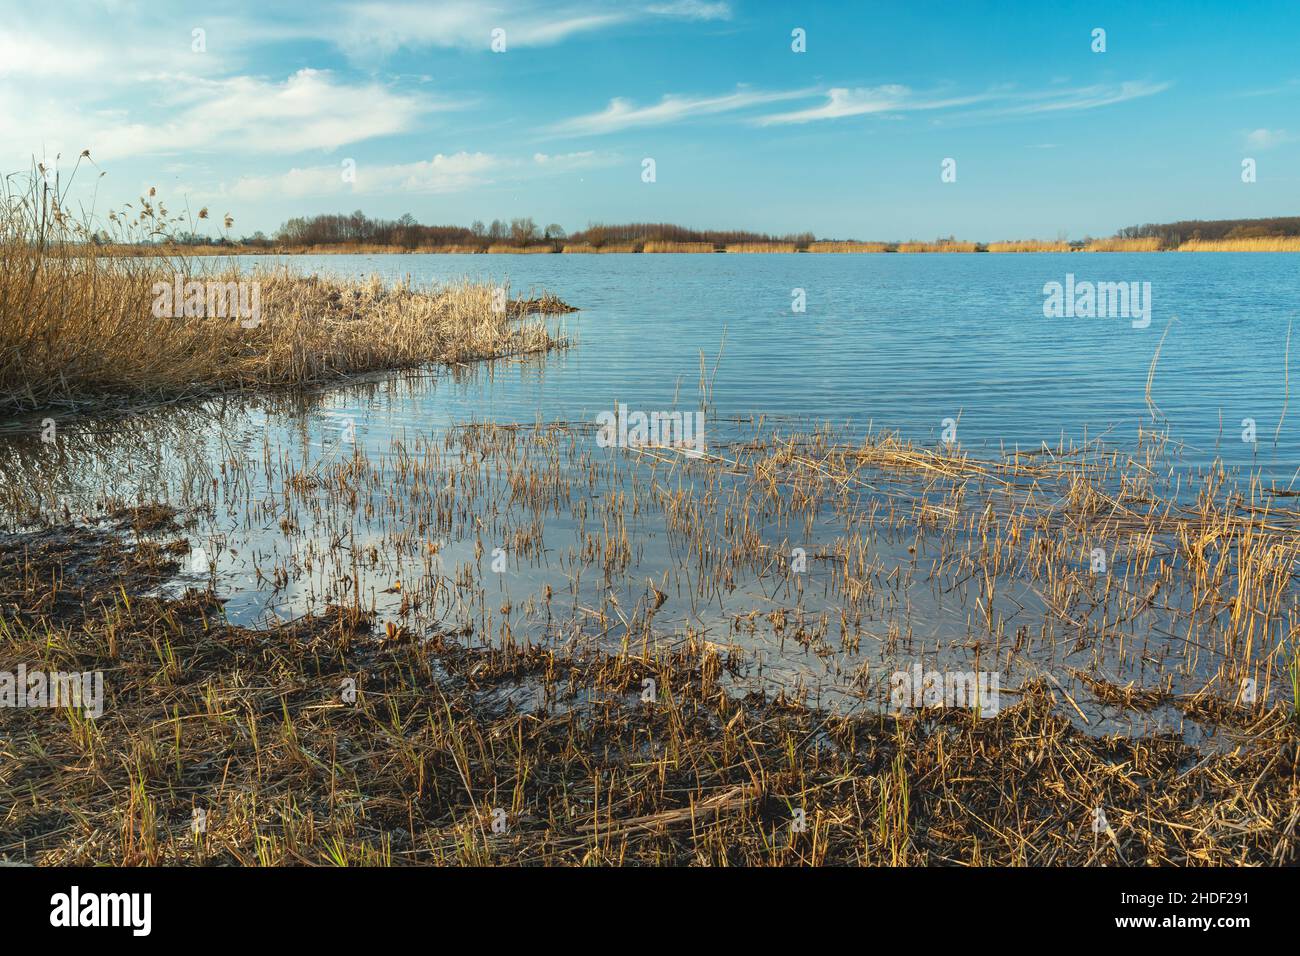 Canne rasate sulla riva del lago Foto Stock